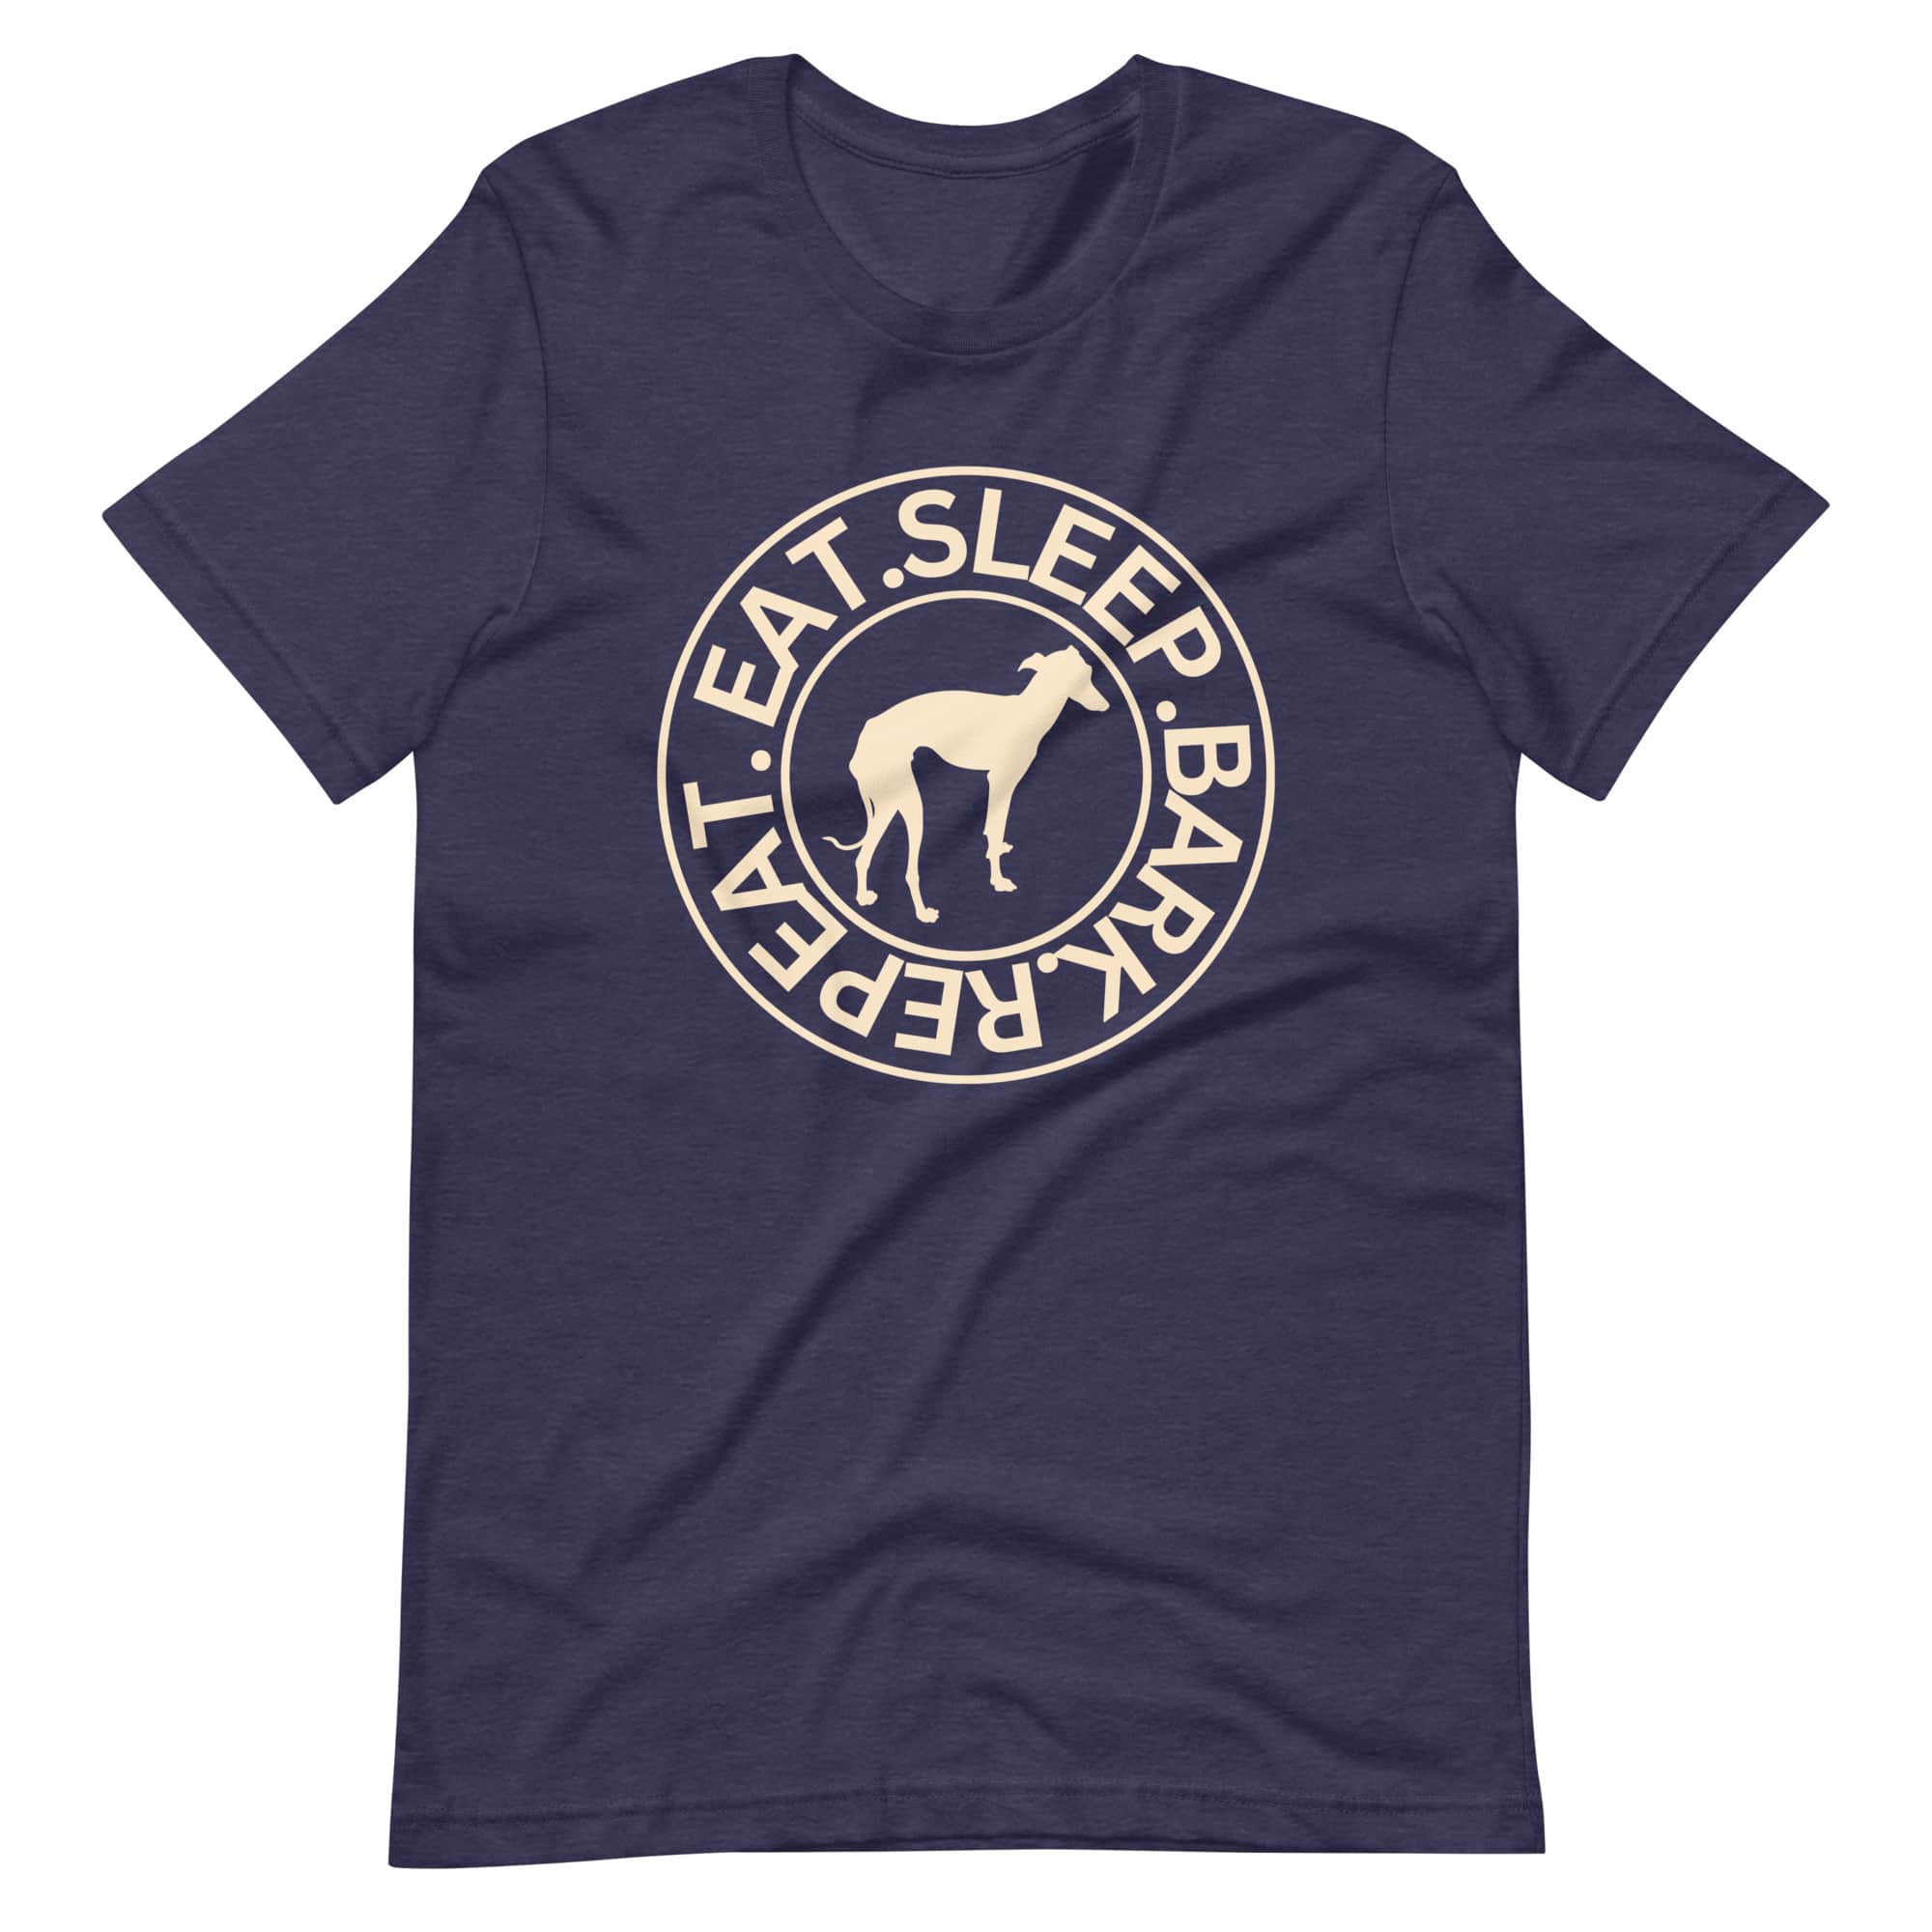 Eat Sleep Bark Repeat Italian Greyhound Unisex T-Shirt. Heather midnight navy